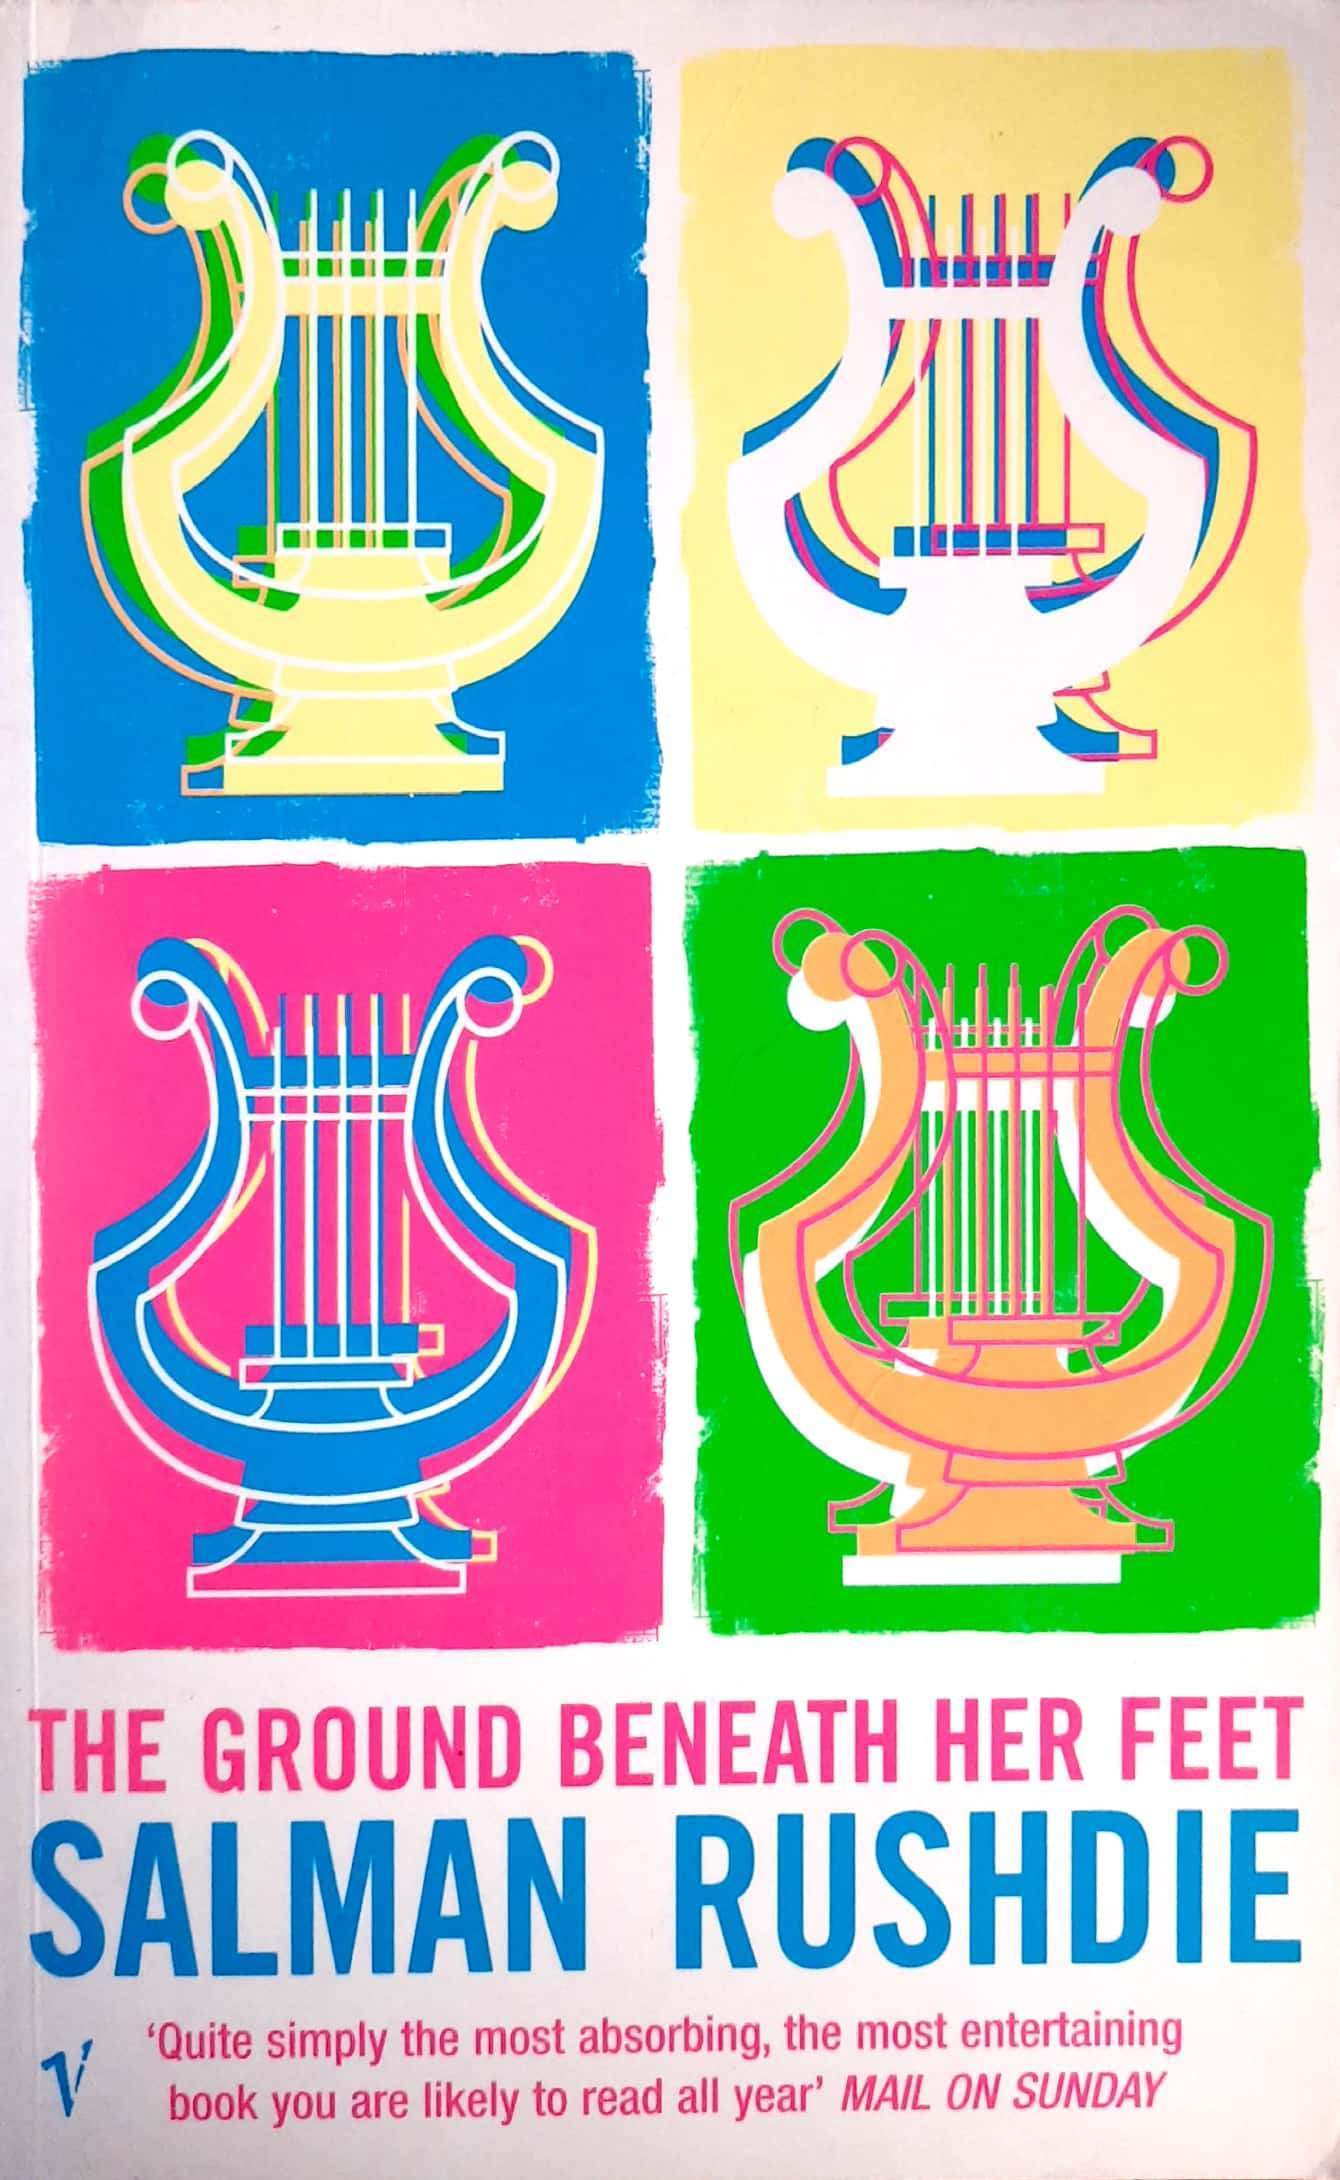 the ground beneath her feet rushdie